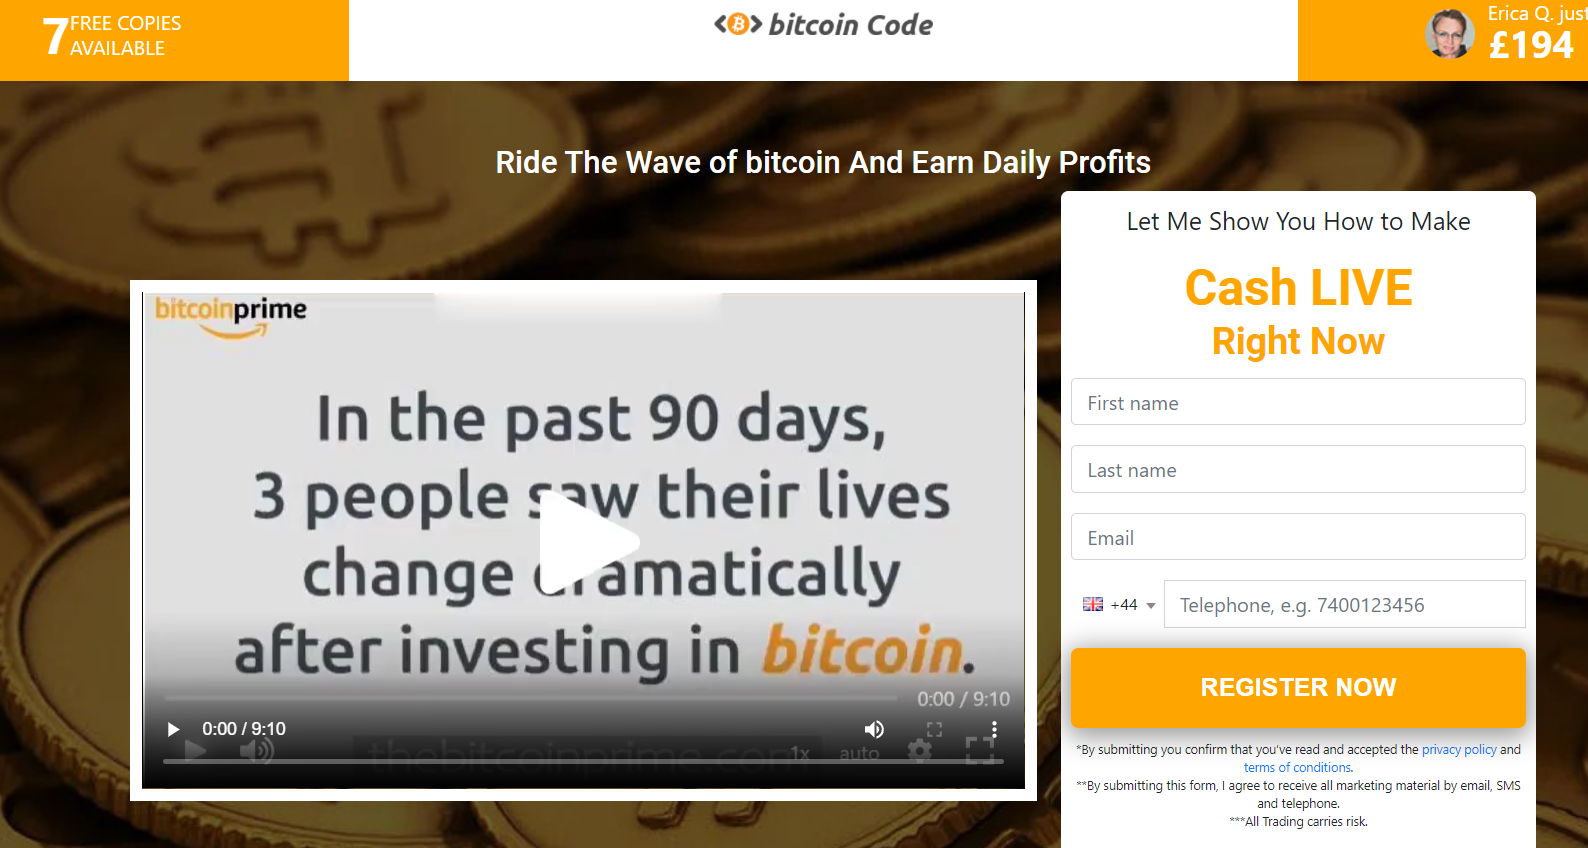 Bitcoin Code pagina